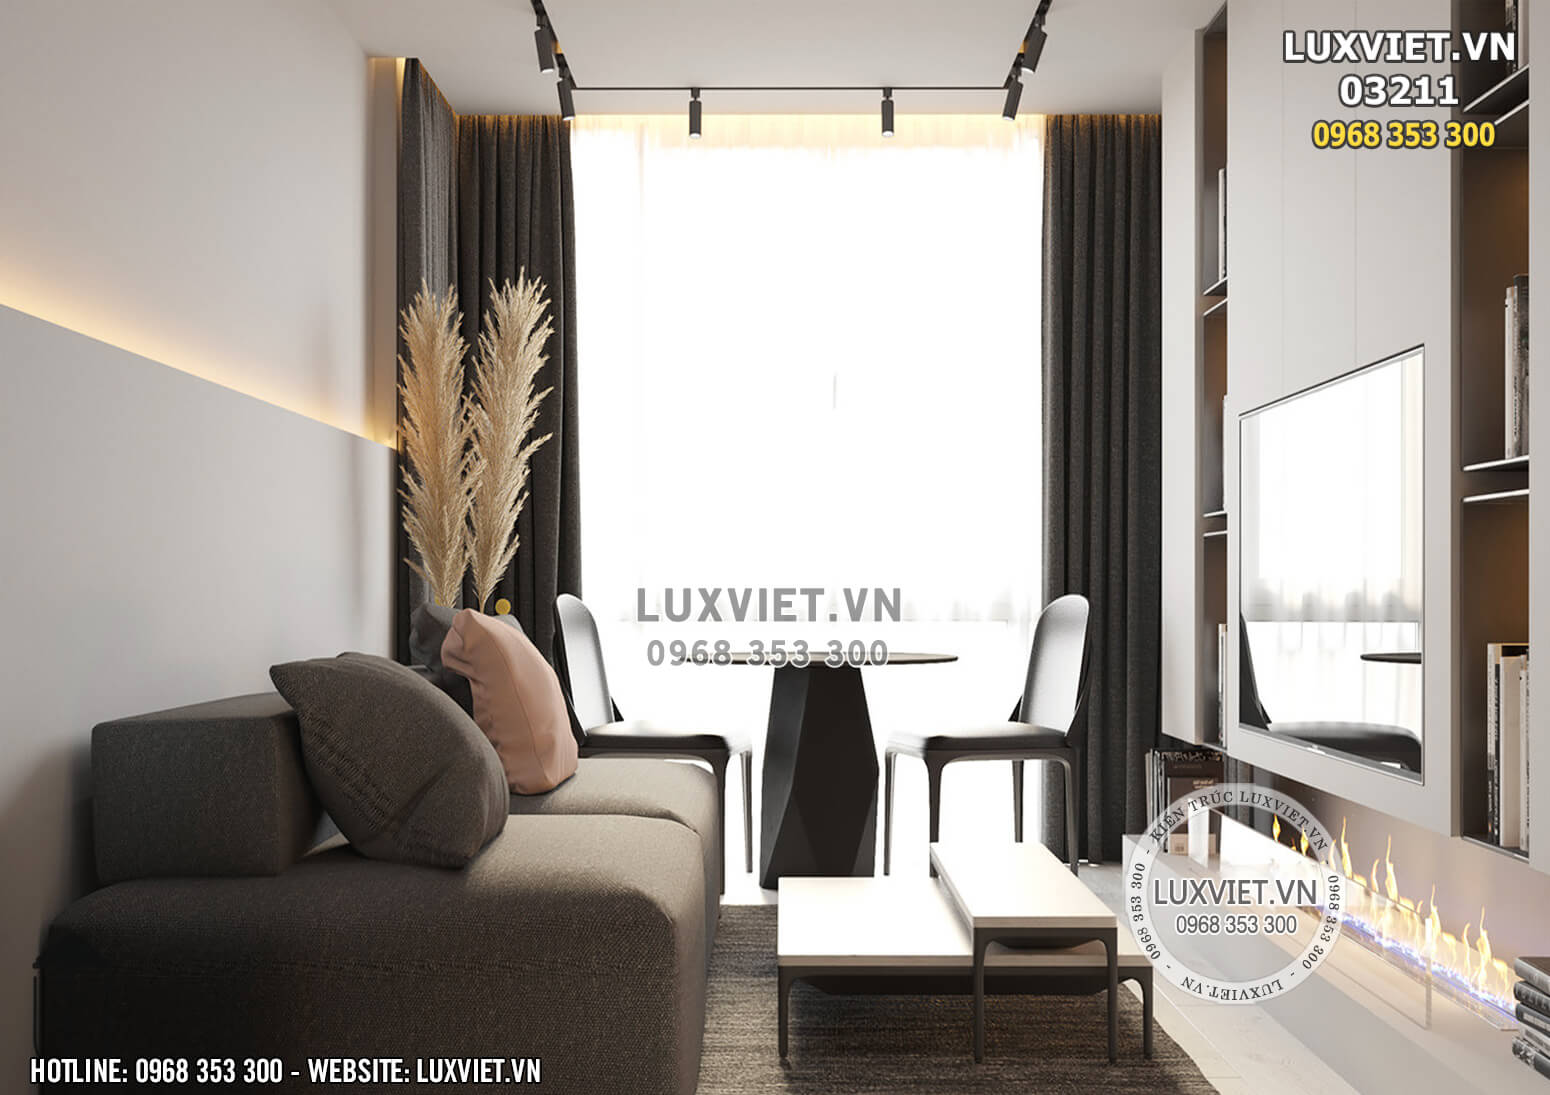 Hình ảnh: Thiết kế nội thất căn hộ mini - LV 03211